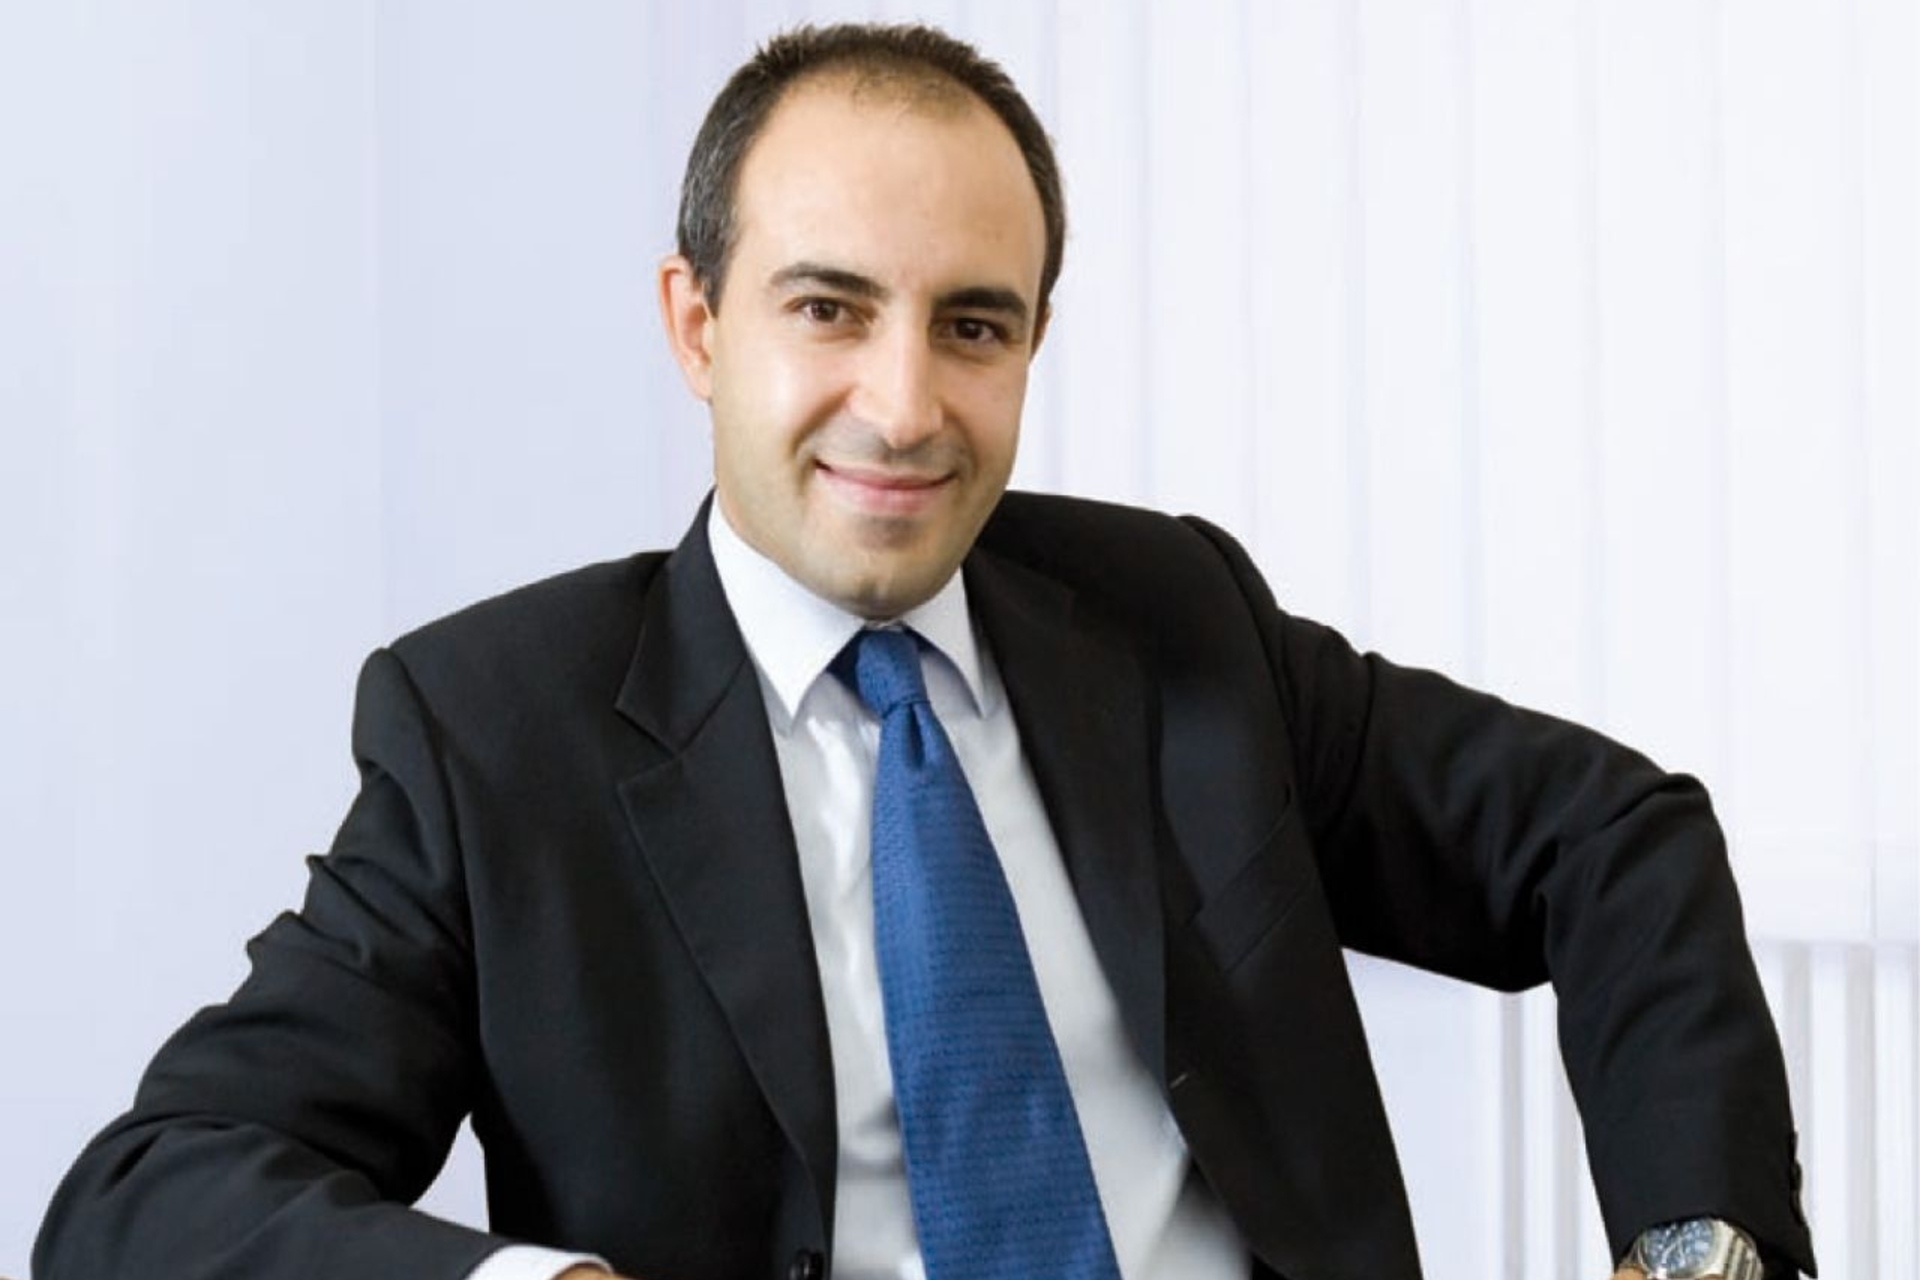 Fabio Pagano ist CEO von SitoVivo